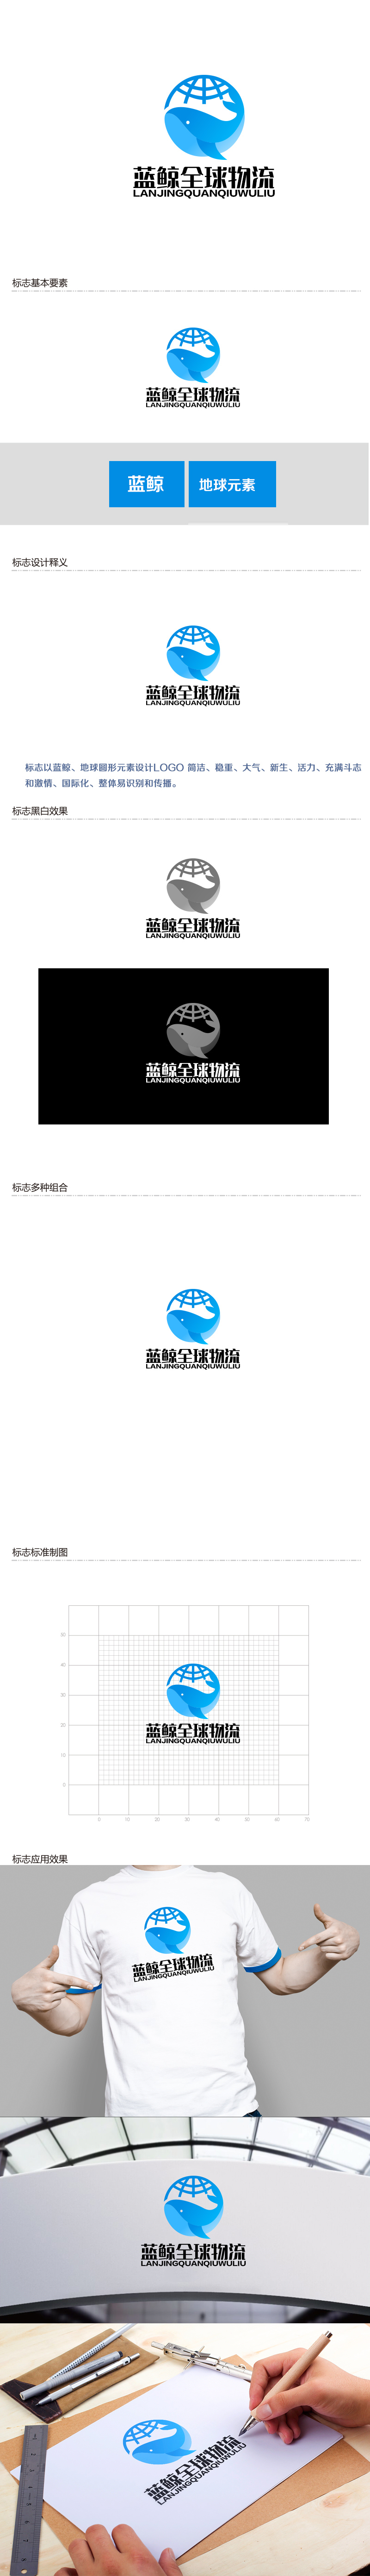 余亮亮的蓝鲸全球物流（广州）有限公司logo设计